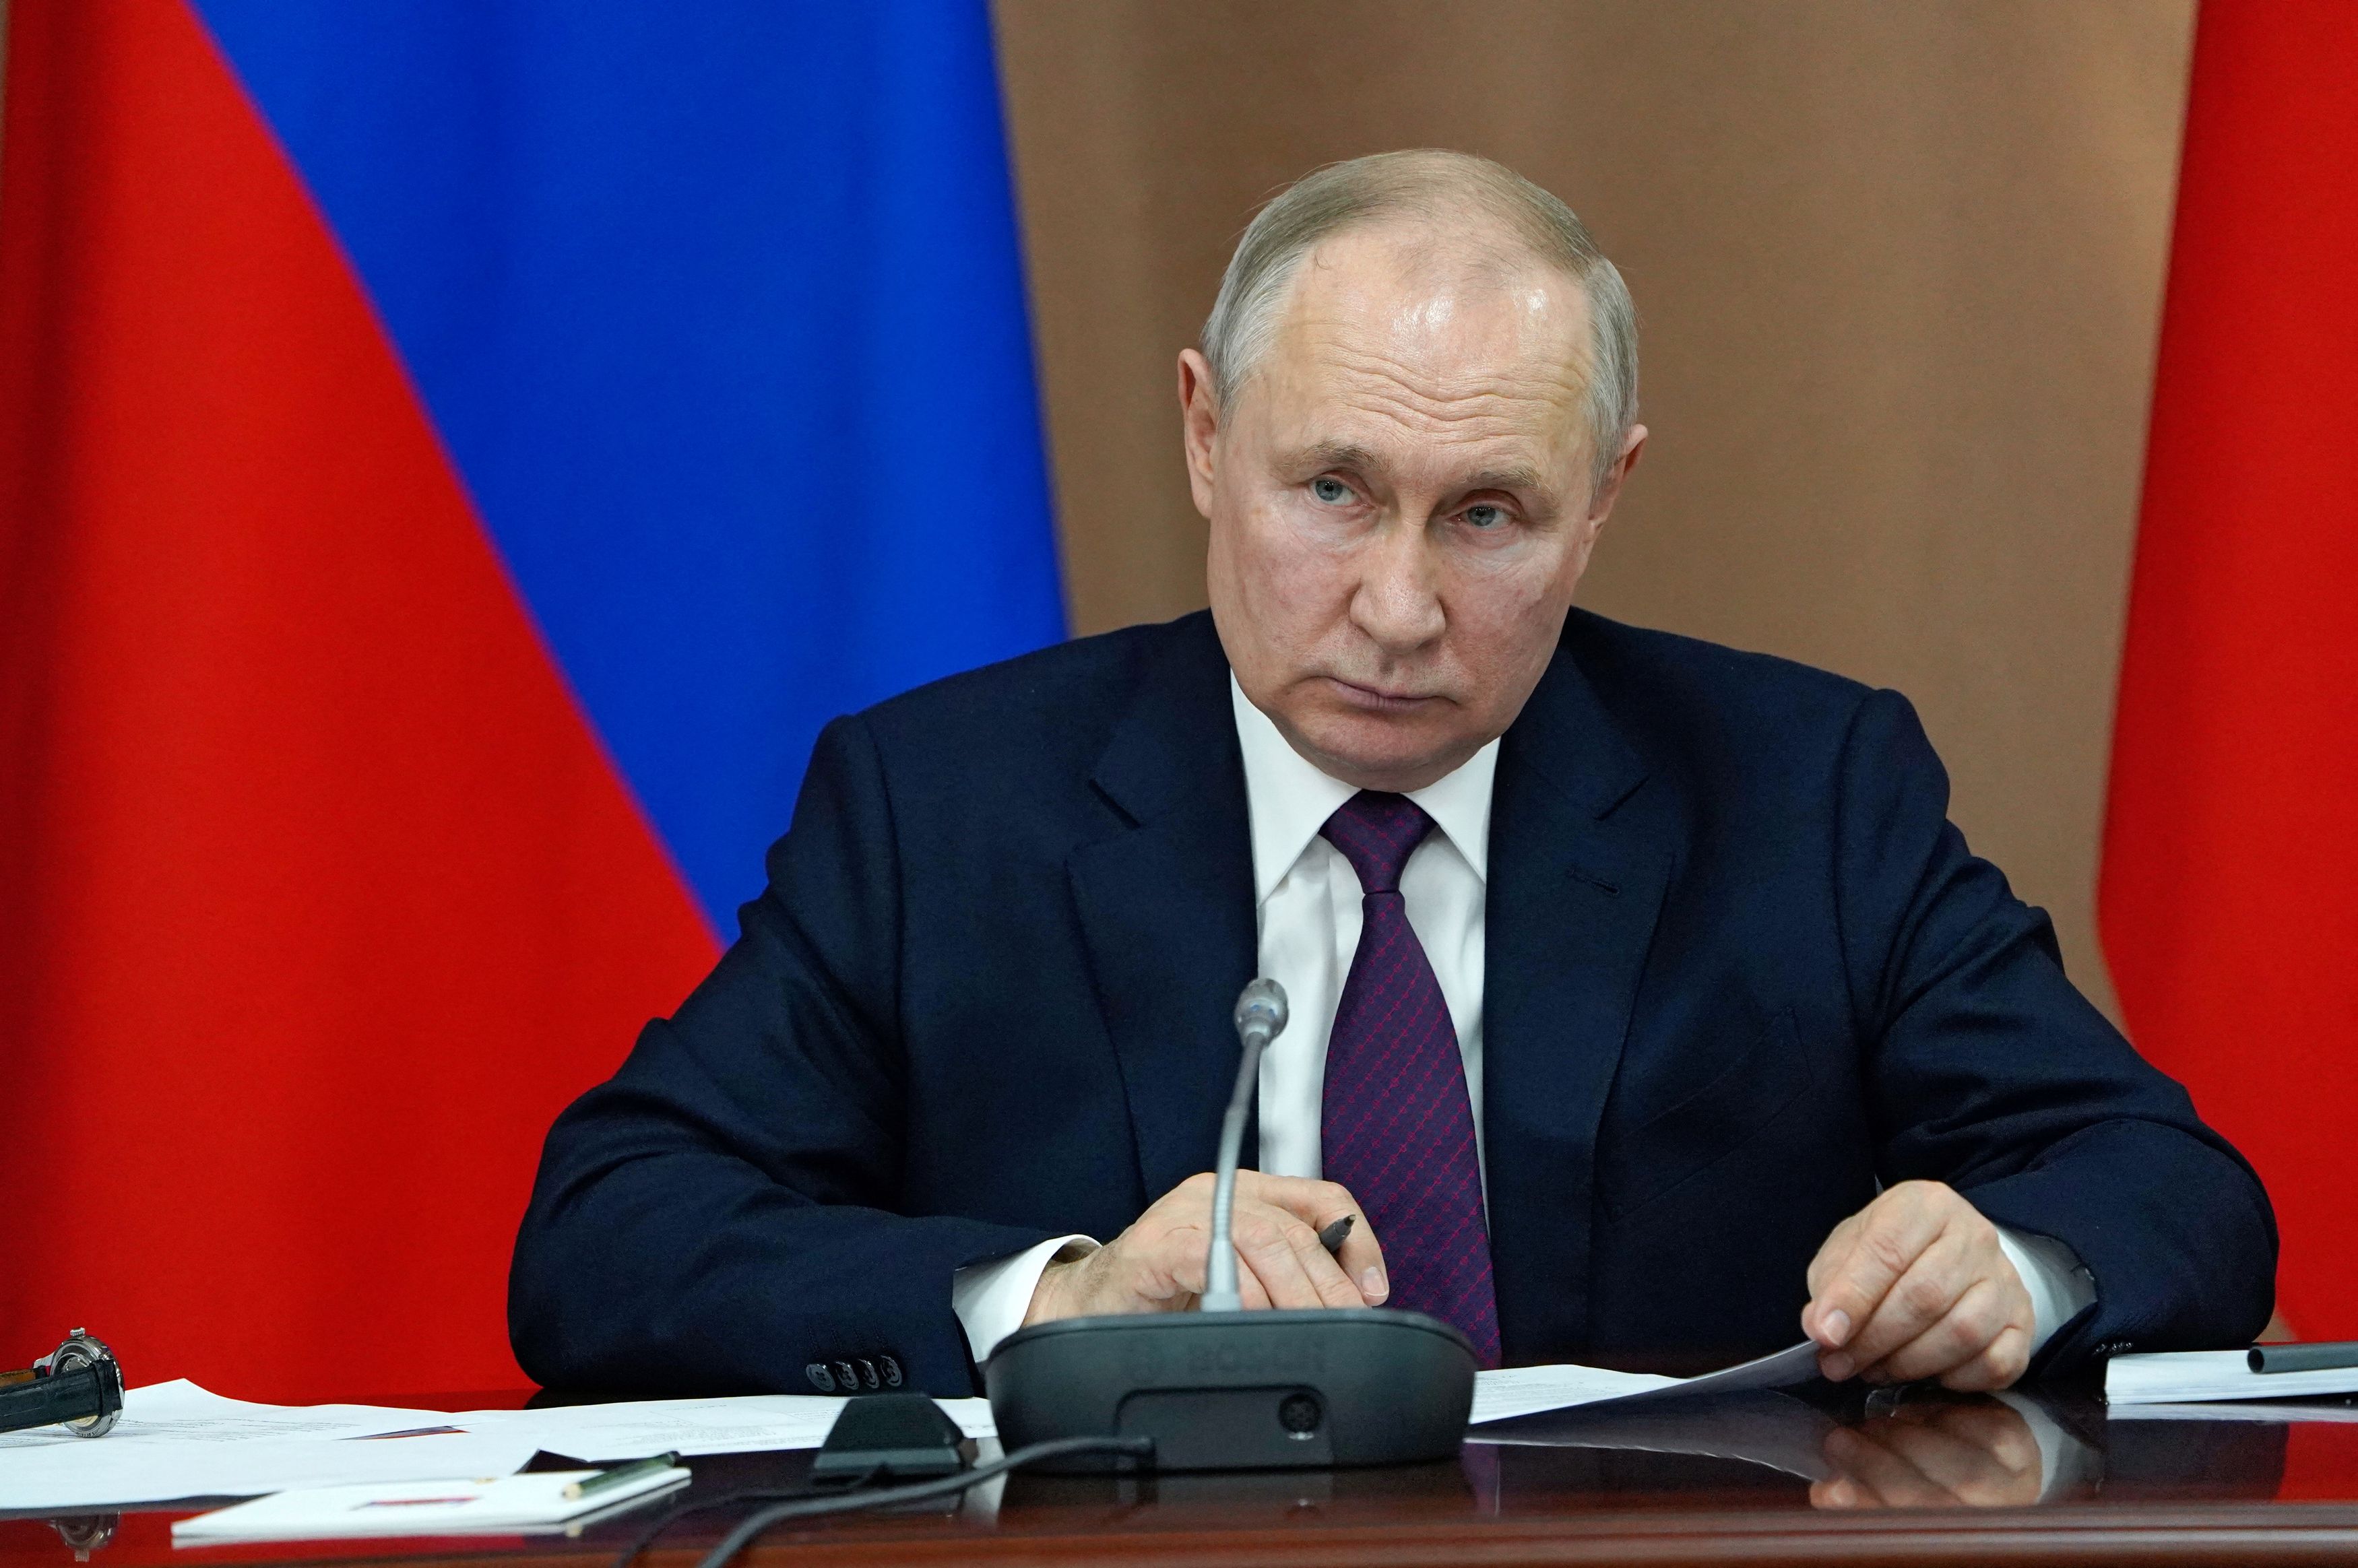 Ο Πούτιν αντεπιτίθεται - Στη λίστα των καταζητούμενων ο δικαστής που εξέδωσε ένταλμα σύλληψής του